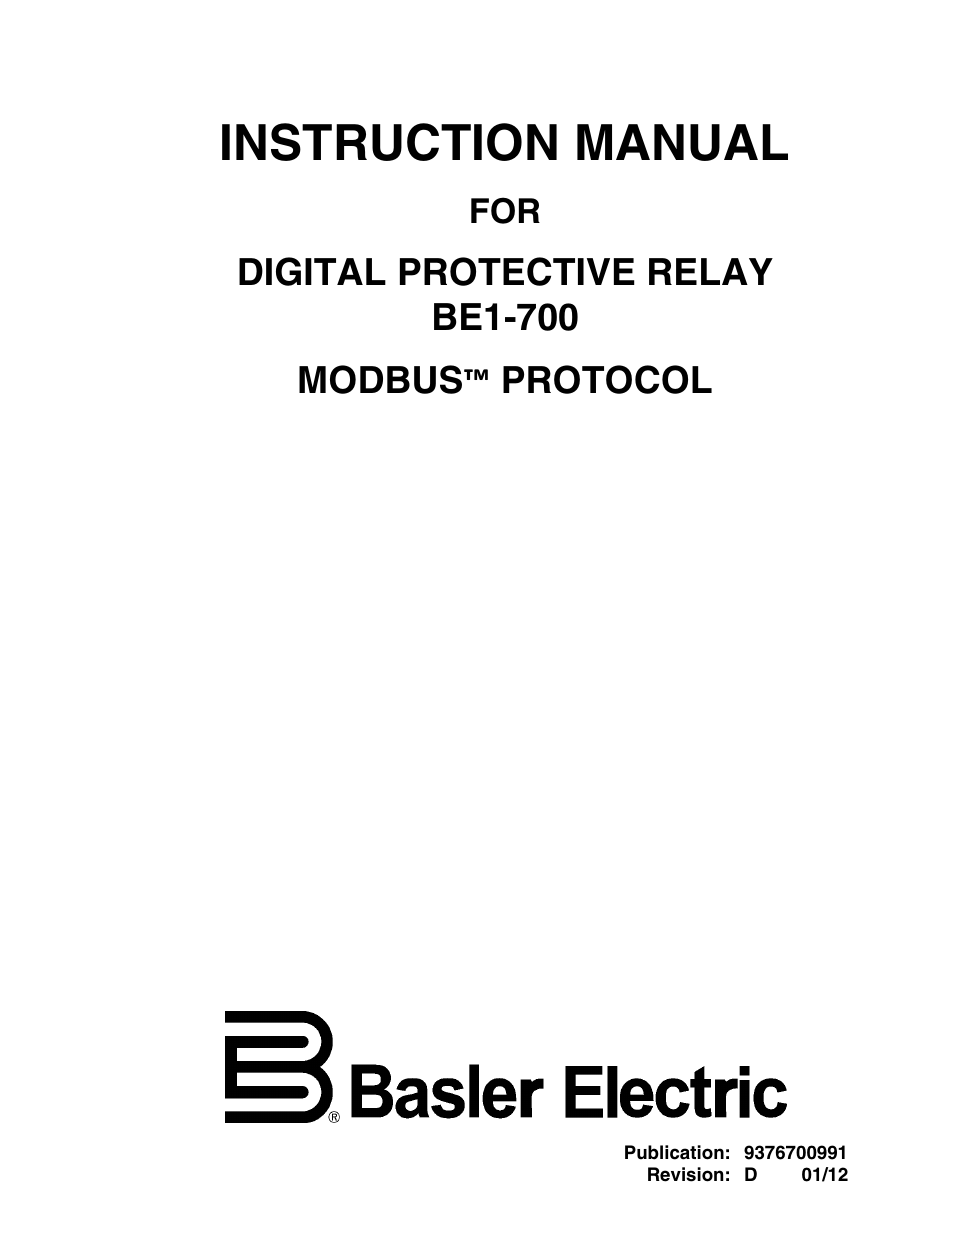 BE1-700 Modbus Protocol